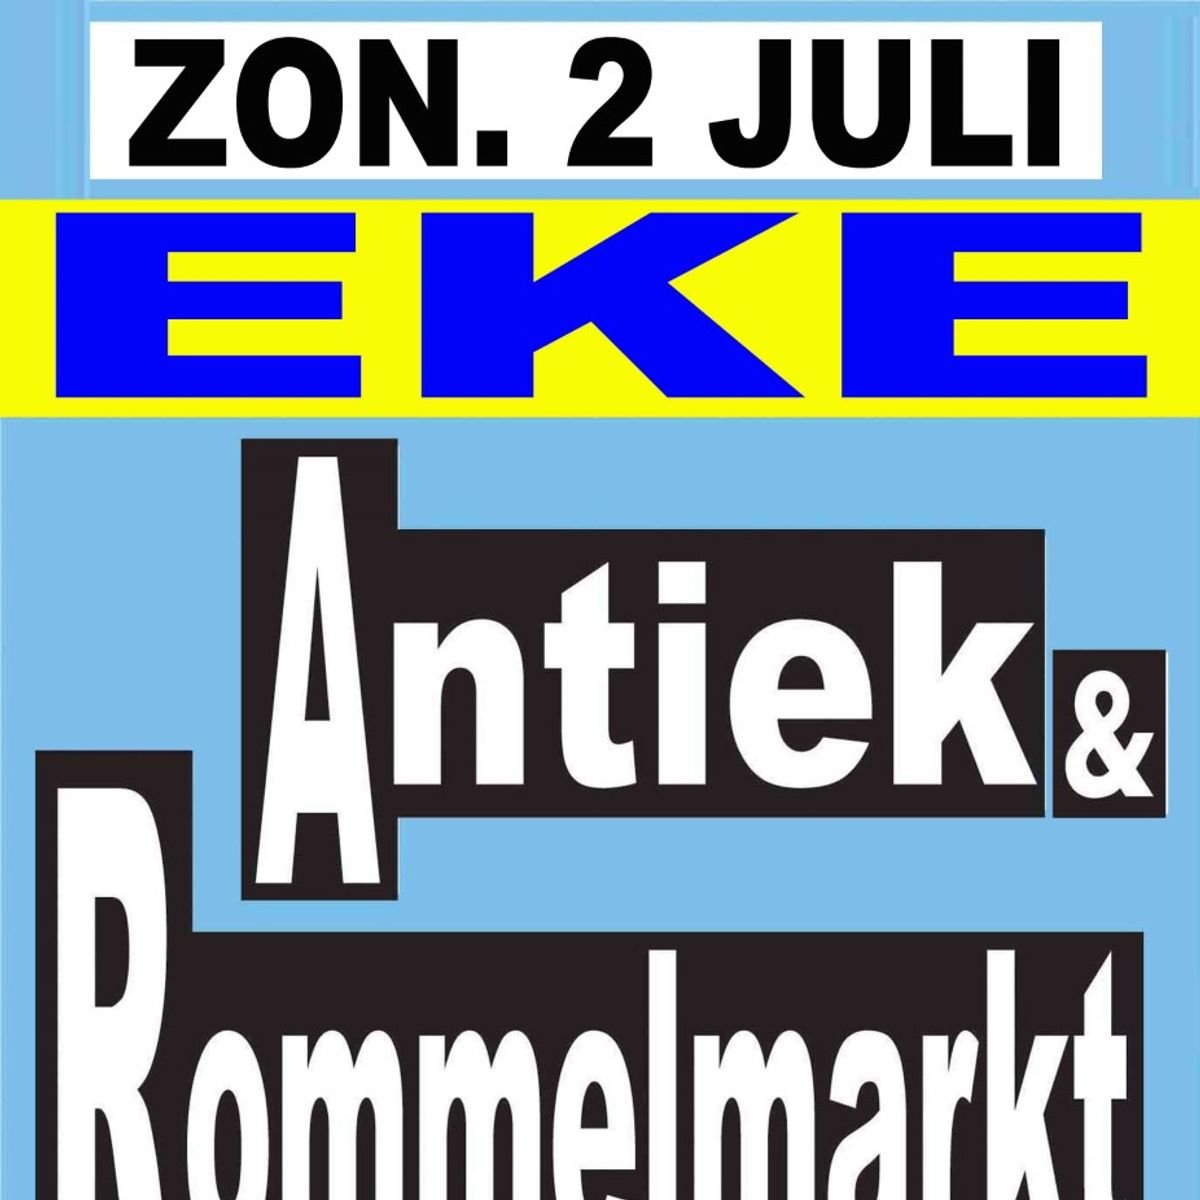 Antiek & Rommelmarkt - Gent - Oost-Vlaanderen - Rommelmarkten - Out.be